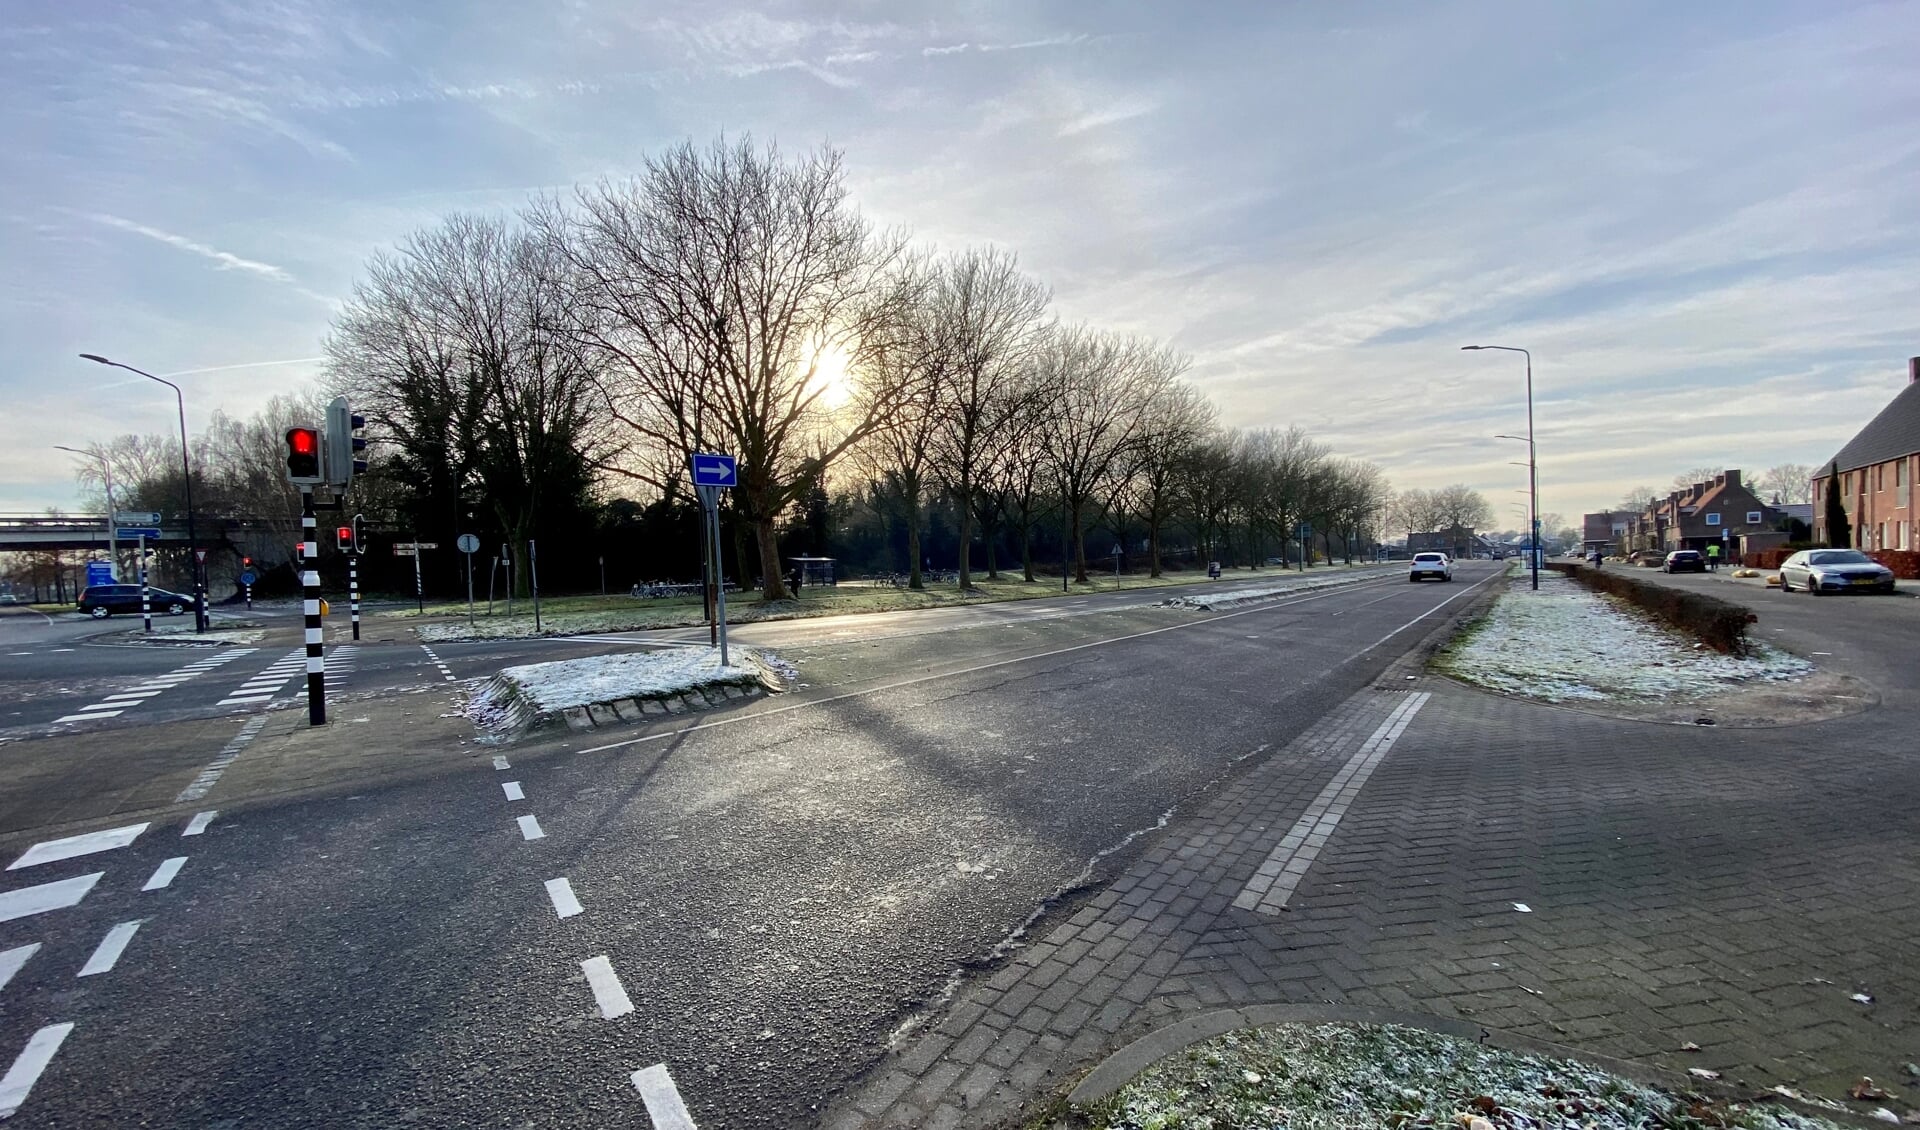 Het knooppunt van de N279/Rembrandtlaan/Taylorbrug is een belangrijke verkeersknoop binnen Veghel.